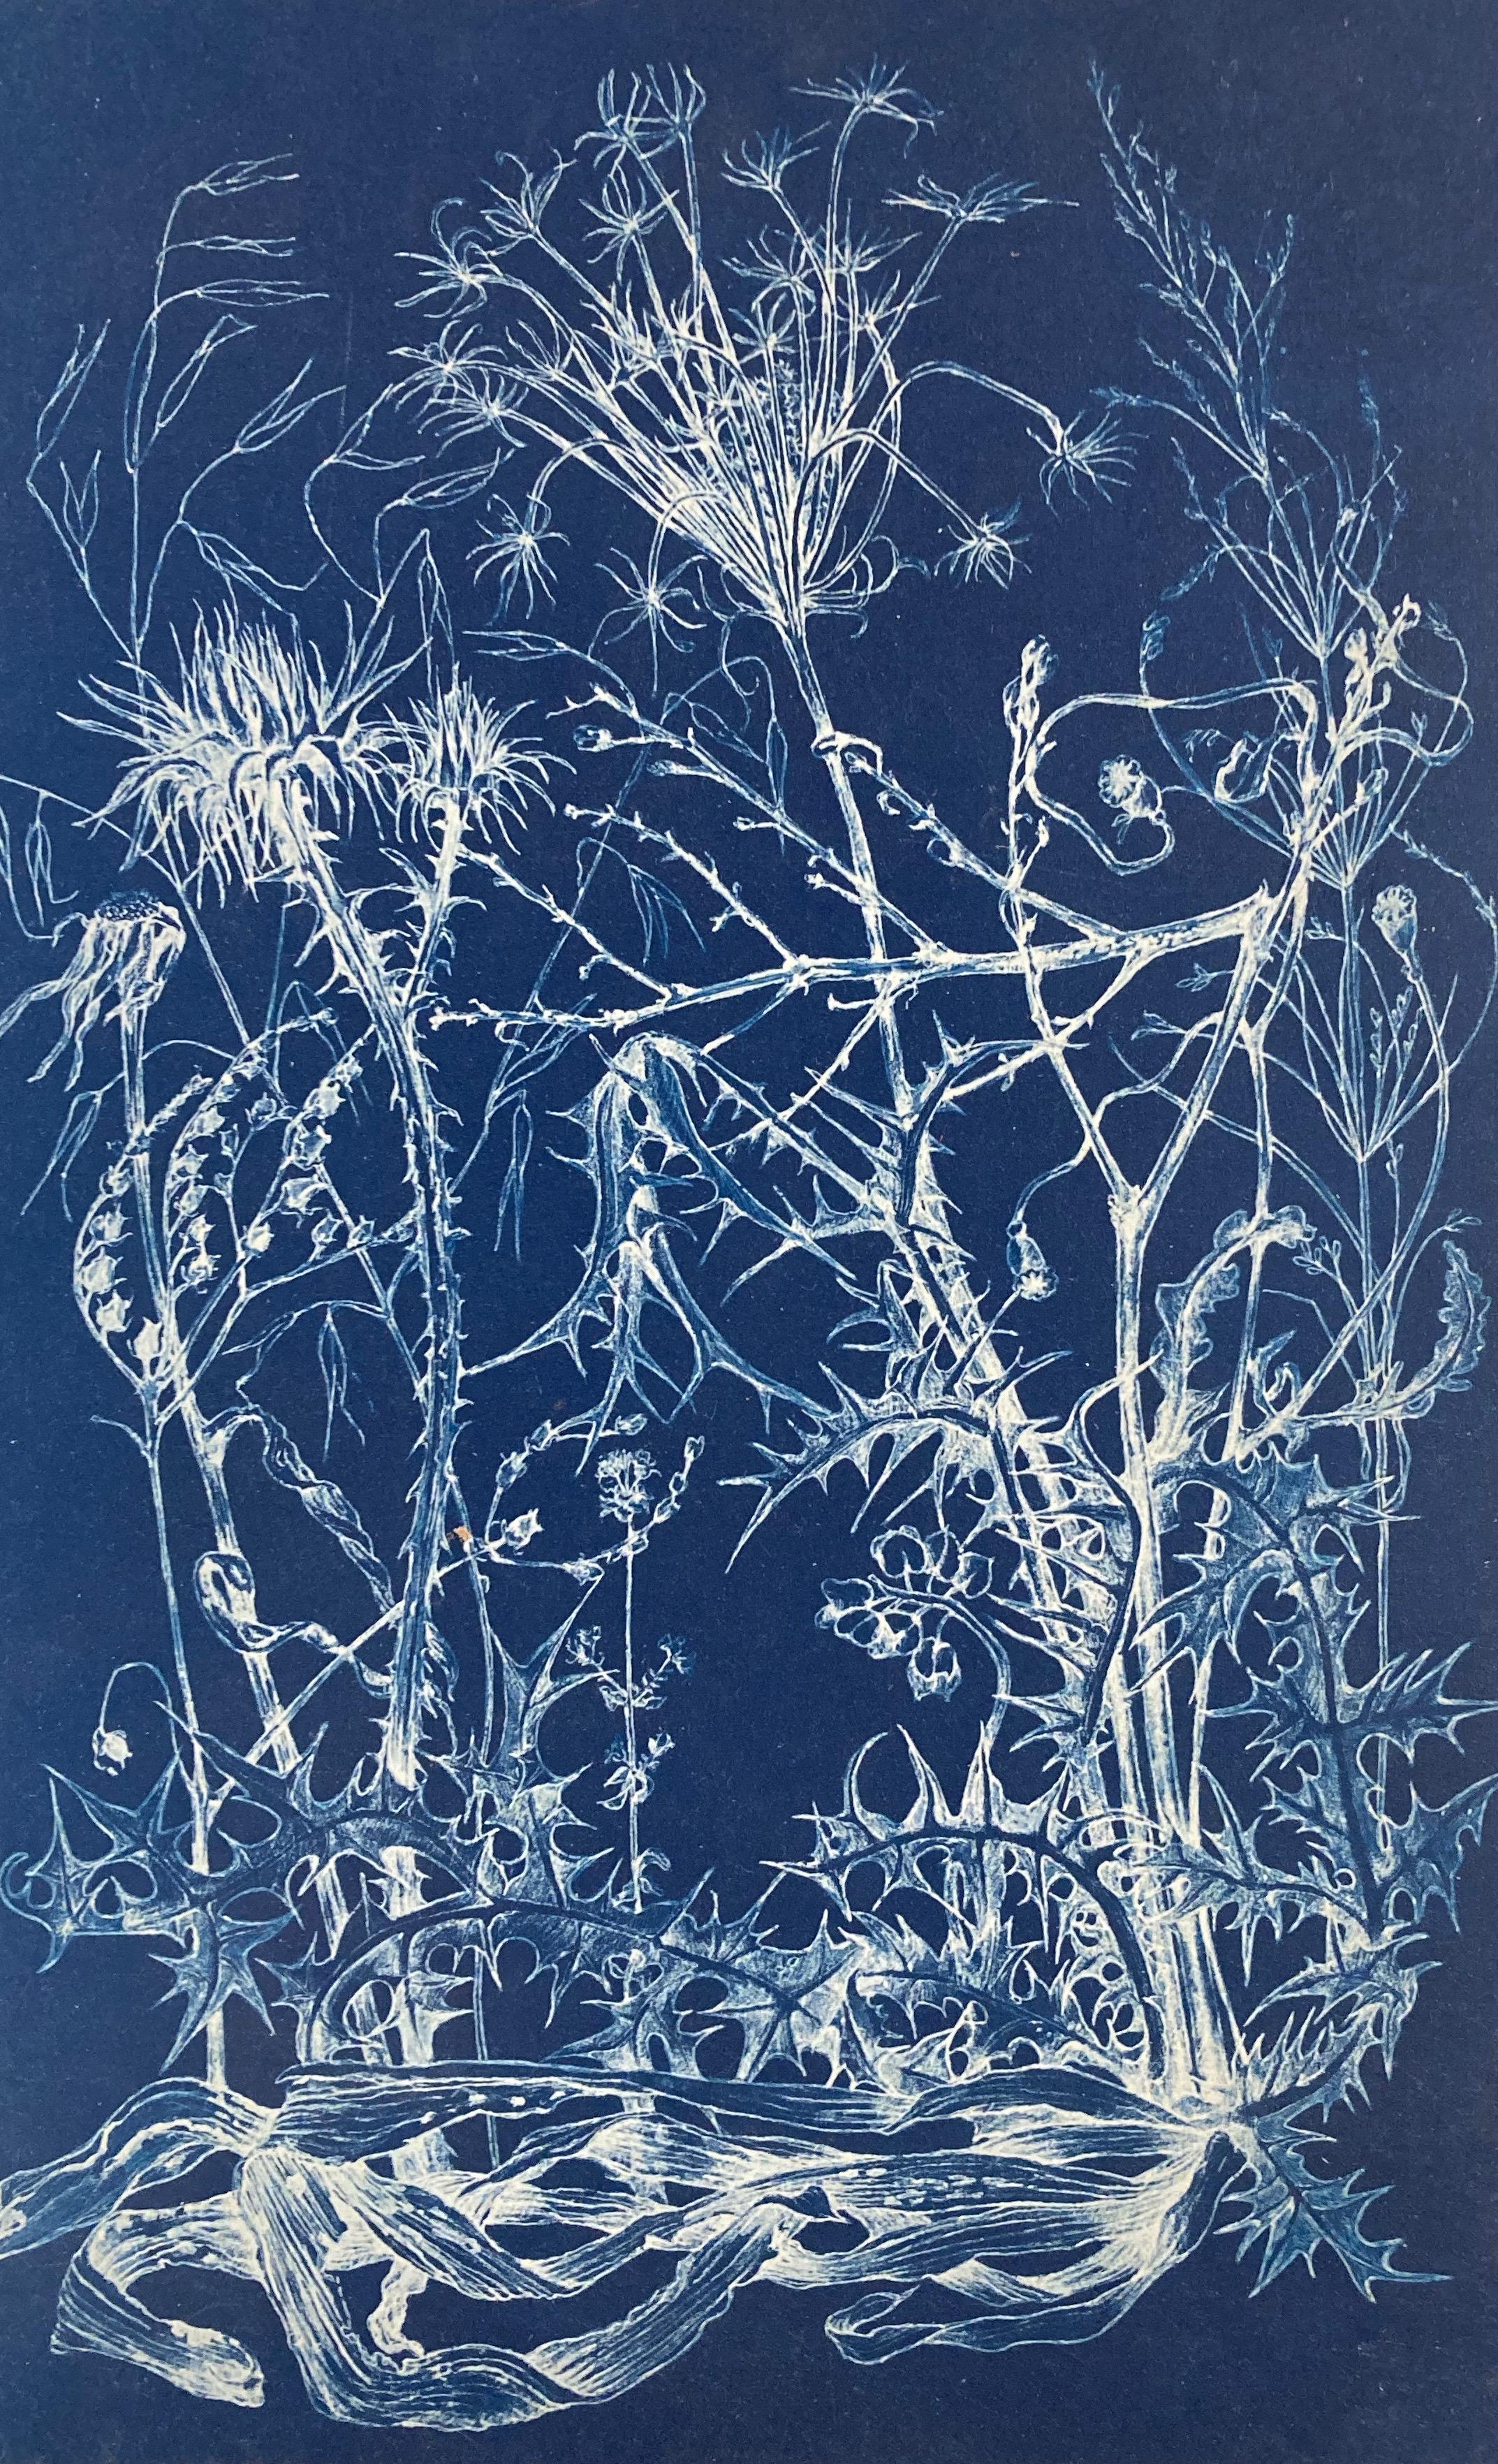 Landscape Photograph Judith Allen-Efstathiou - Étude de fleur photographique réaliste et abstraite en bleu/blanc « Mapping the Walk »